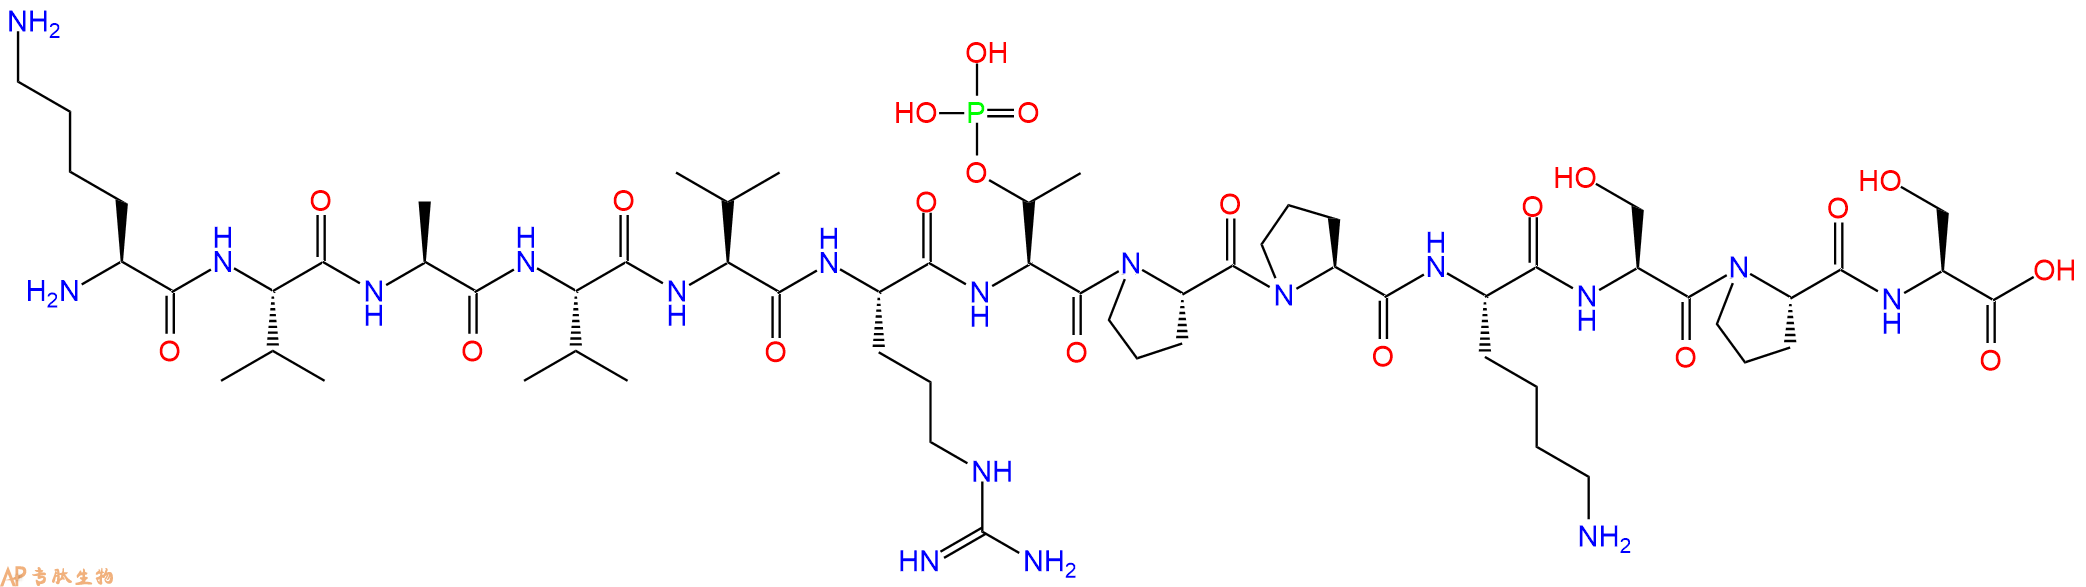 专肽生物产品(THR(POH)231)-TAU PEPTIDE (225-237)1670270-09-3